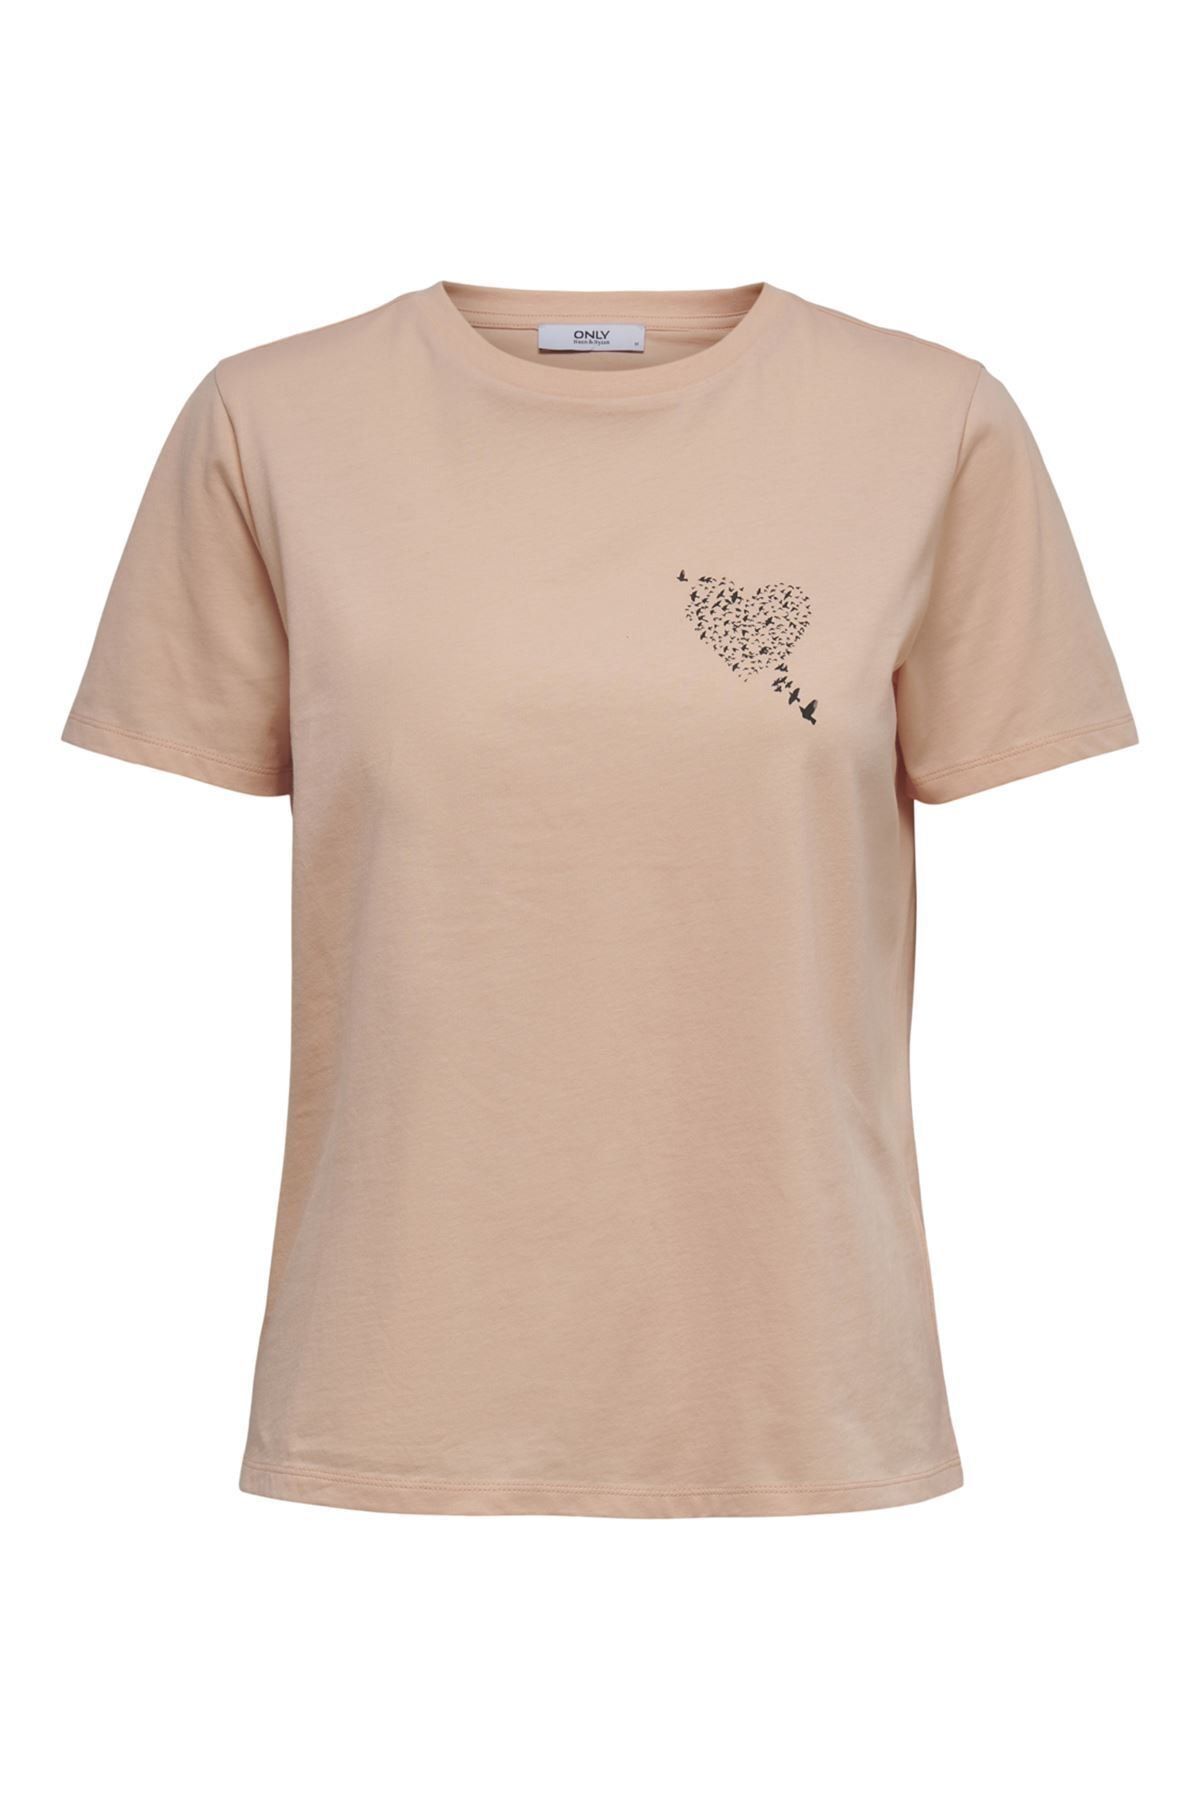 Only 15237656 Kadın T-shirt